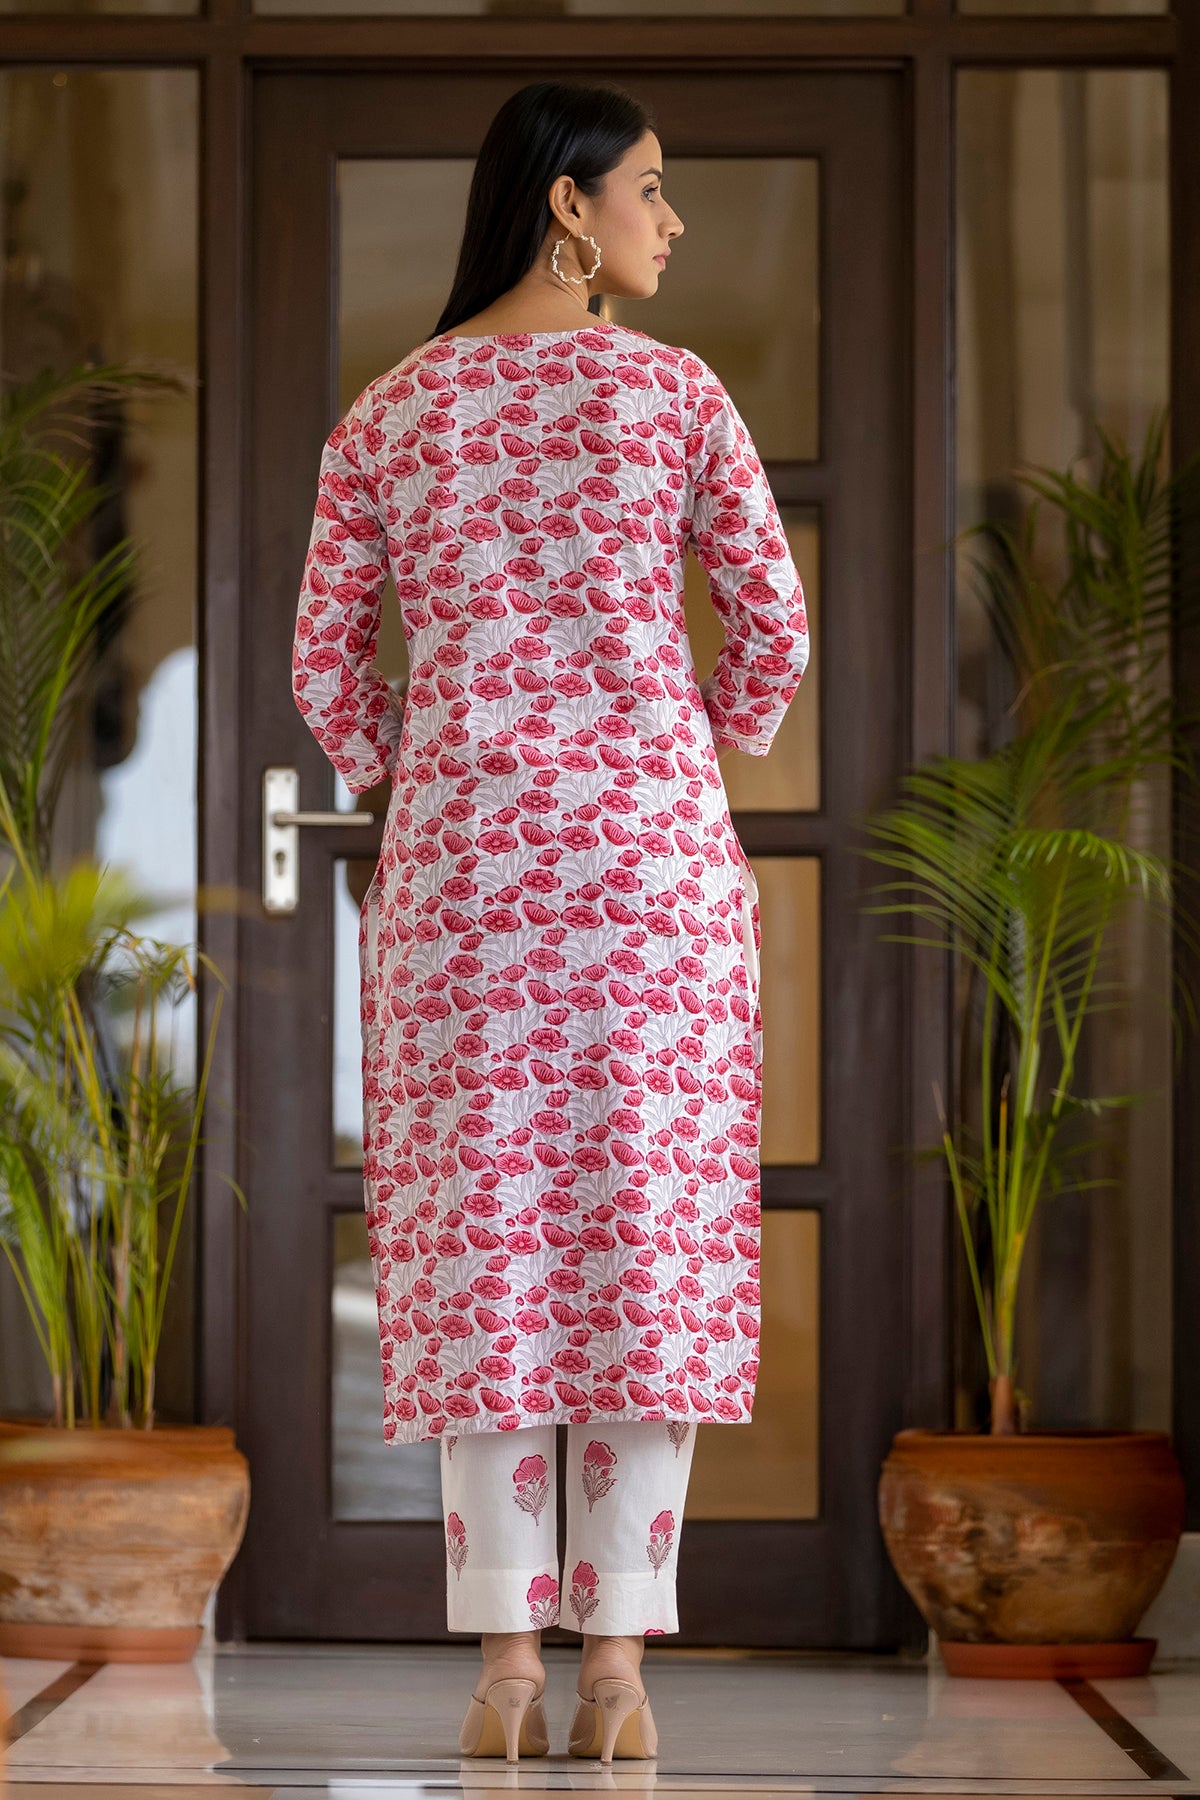 Cotton kurta sleeve designs idea/Churidhar sleeve/bow hand/Churidhar design  - YouTube